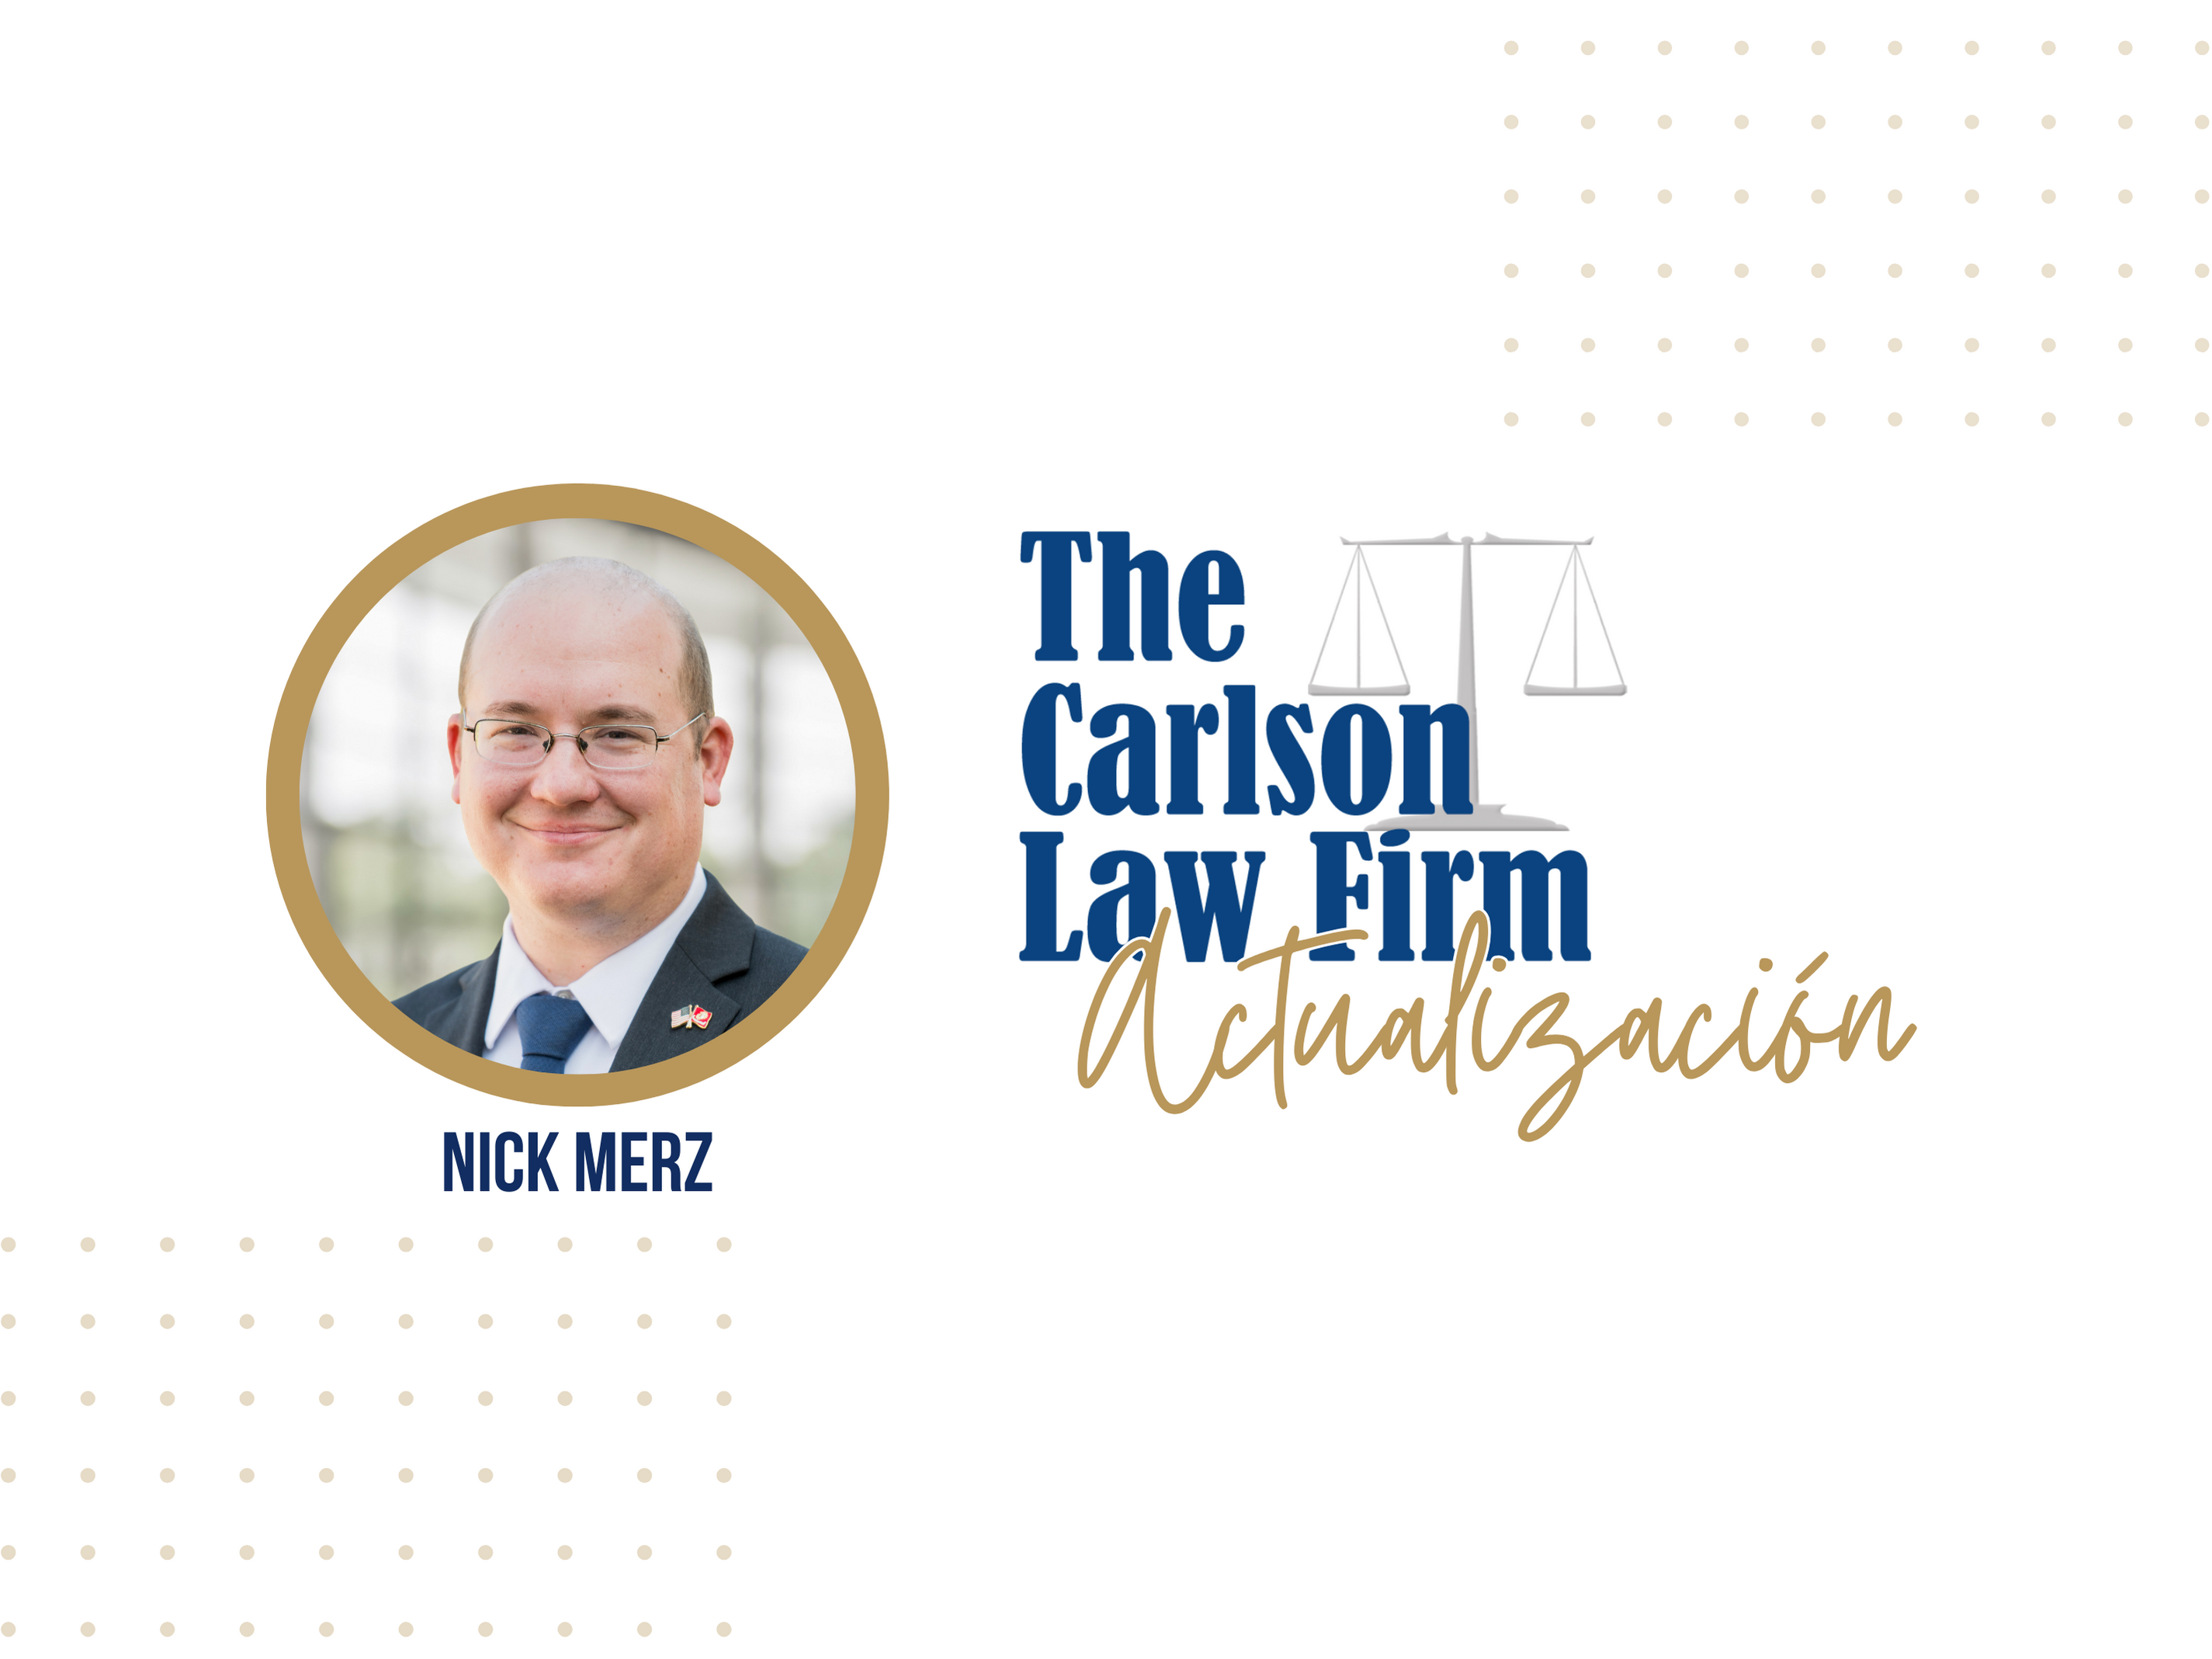 El abogado licenciado Nick Merz del bufete The Carlson Law Firm tiene una actualización